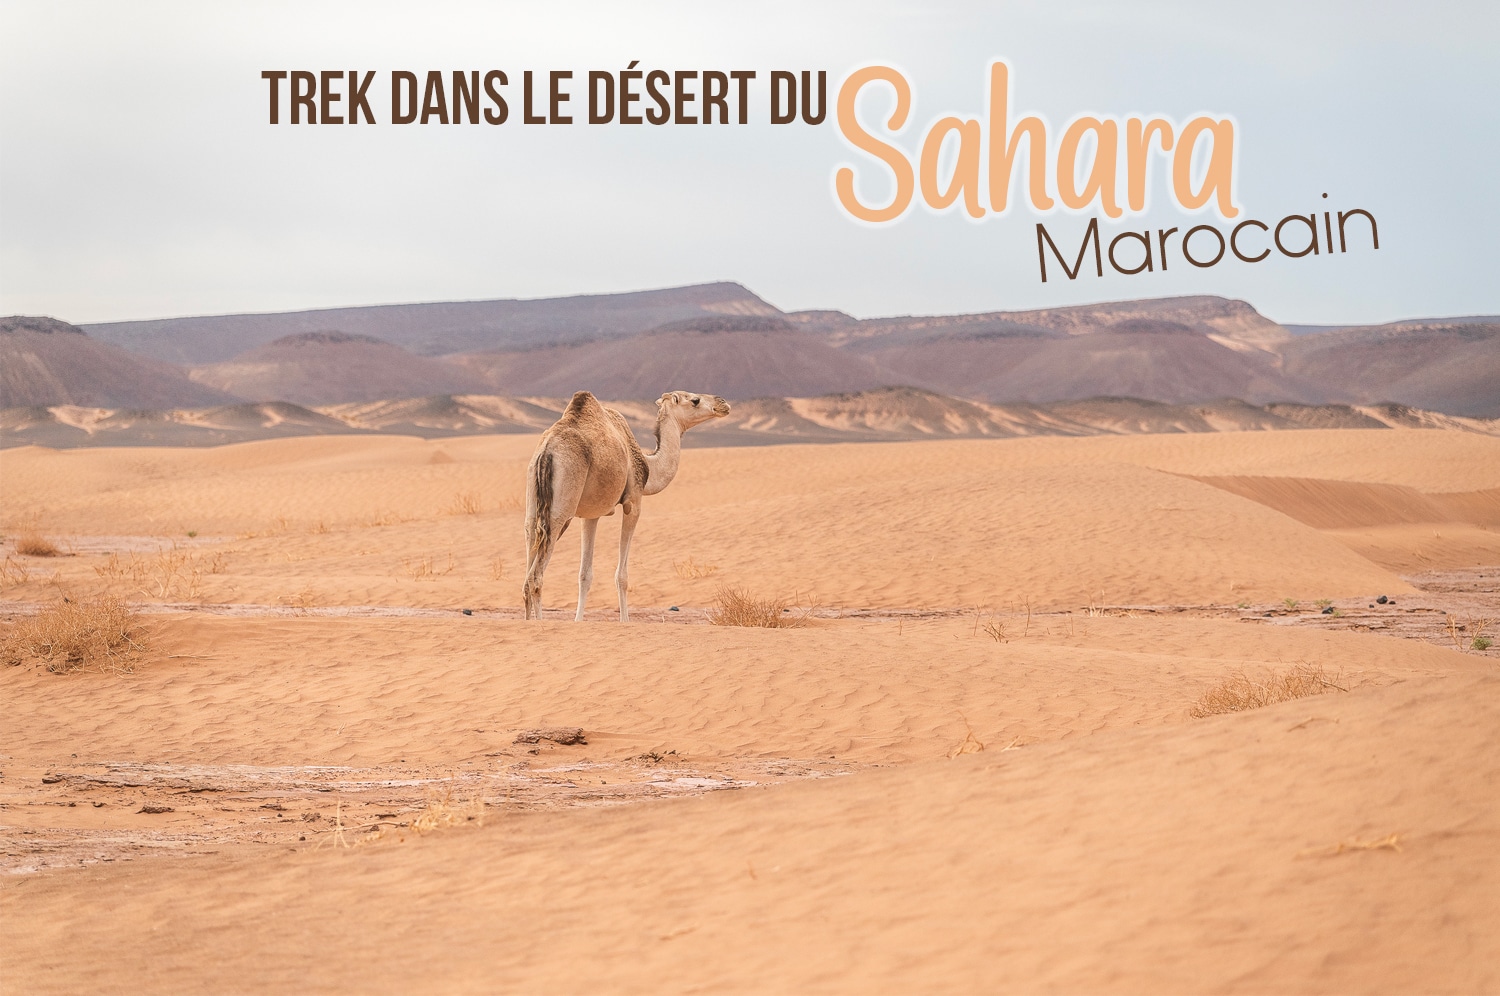 You are currently viewing Trek dans le désert du Sahara marocain